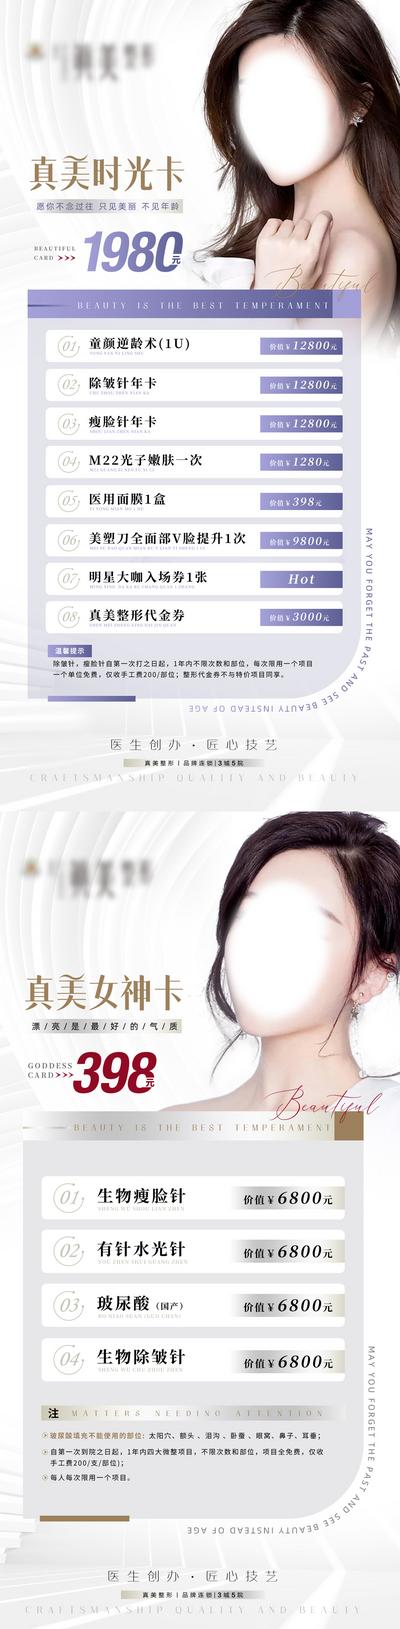 【南门网】广告 海报 价格表 医美 美容卡 护肤 美容 水光针 玻尿酸